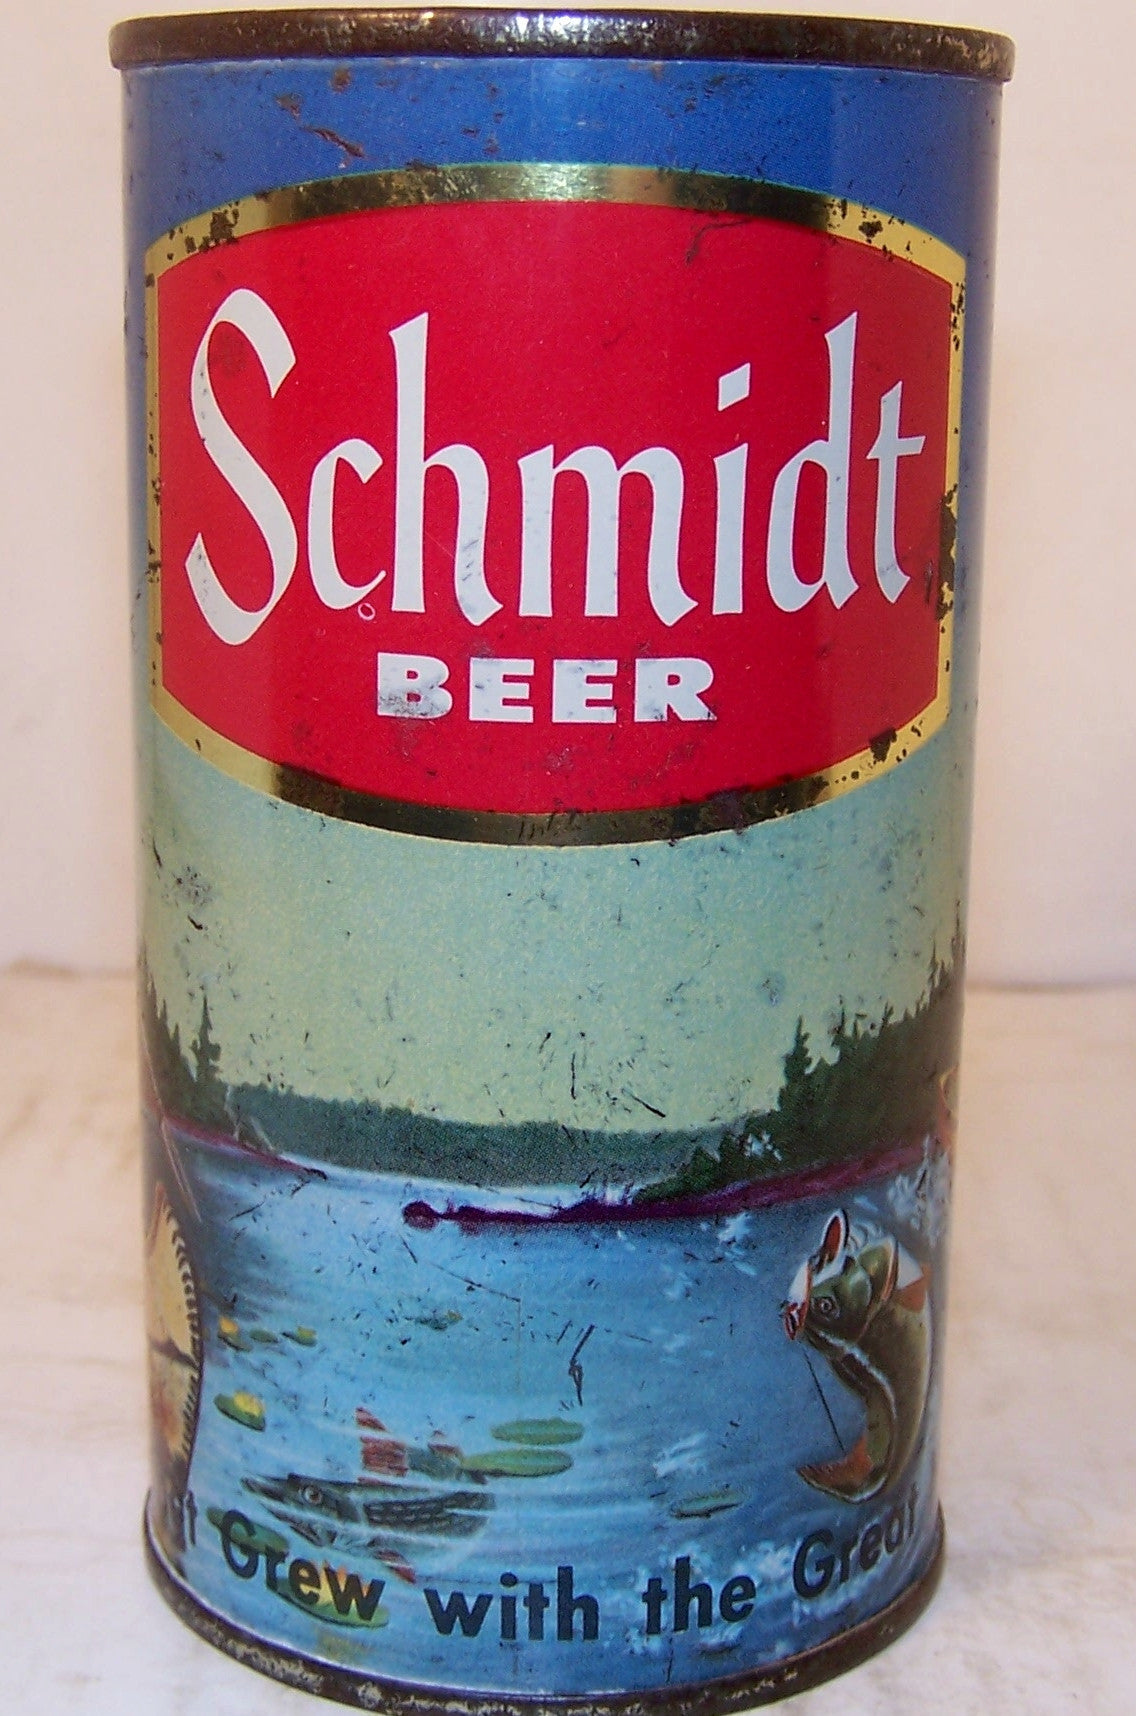 Schmidt Beer (Indian spear fishing) USBC 130-34, Grade 1- Sold 1/20/15